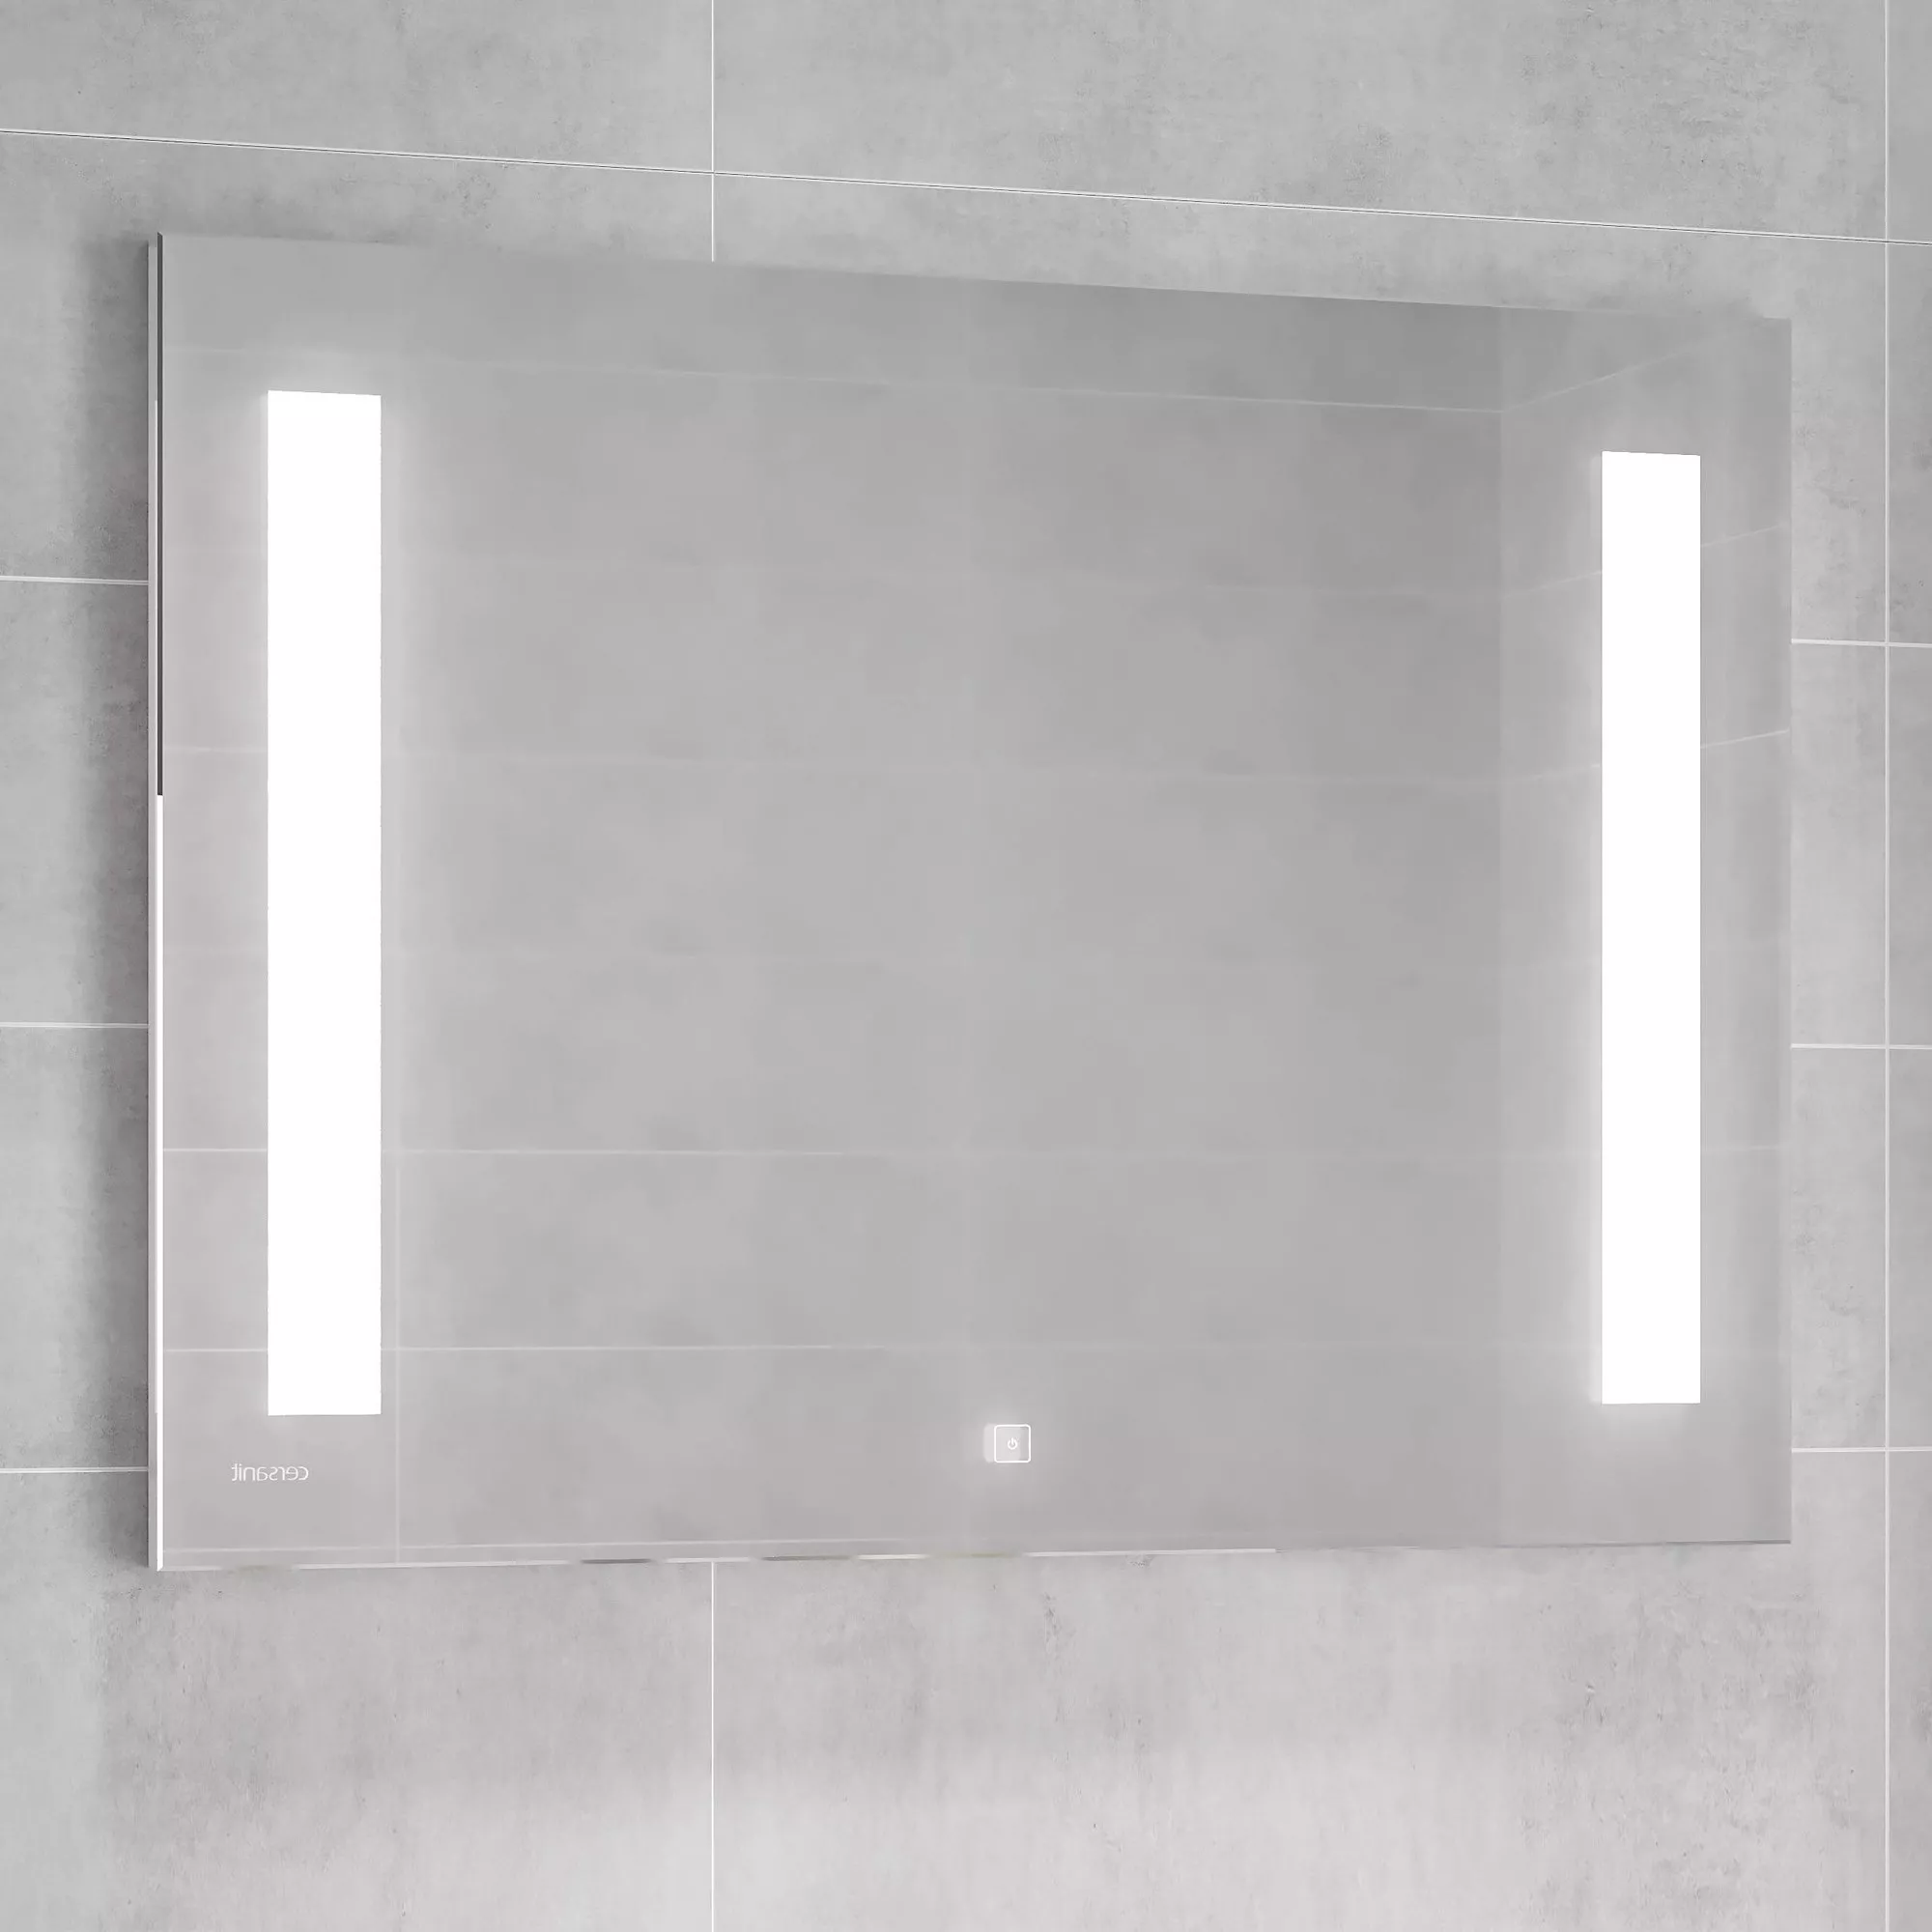 Зеркало Cersanit LED 020 base 80, с подсветкой, сенсор на зеркале